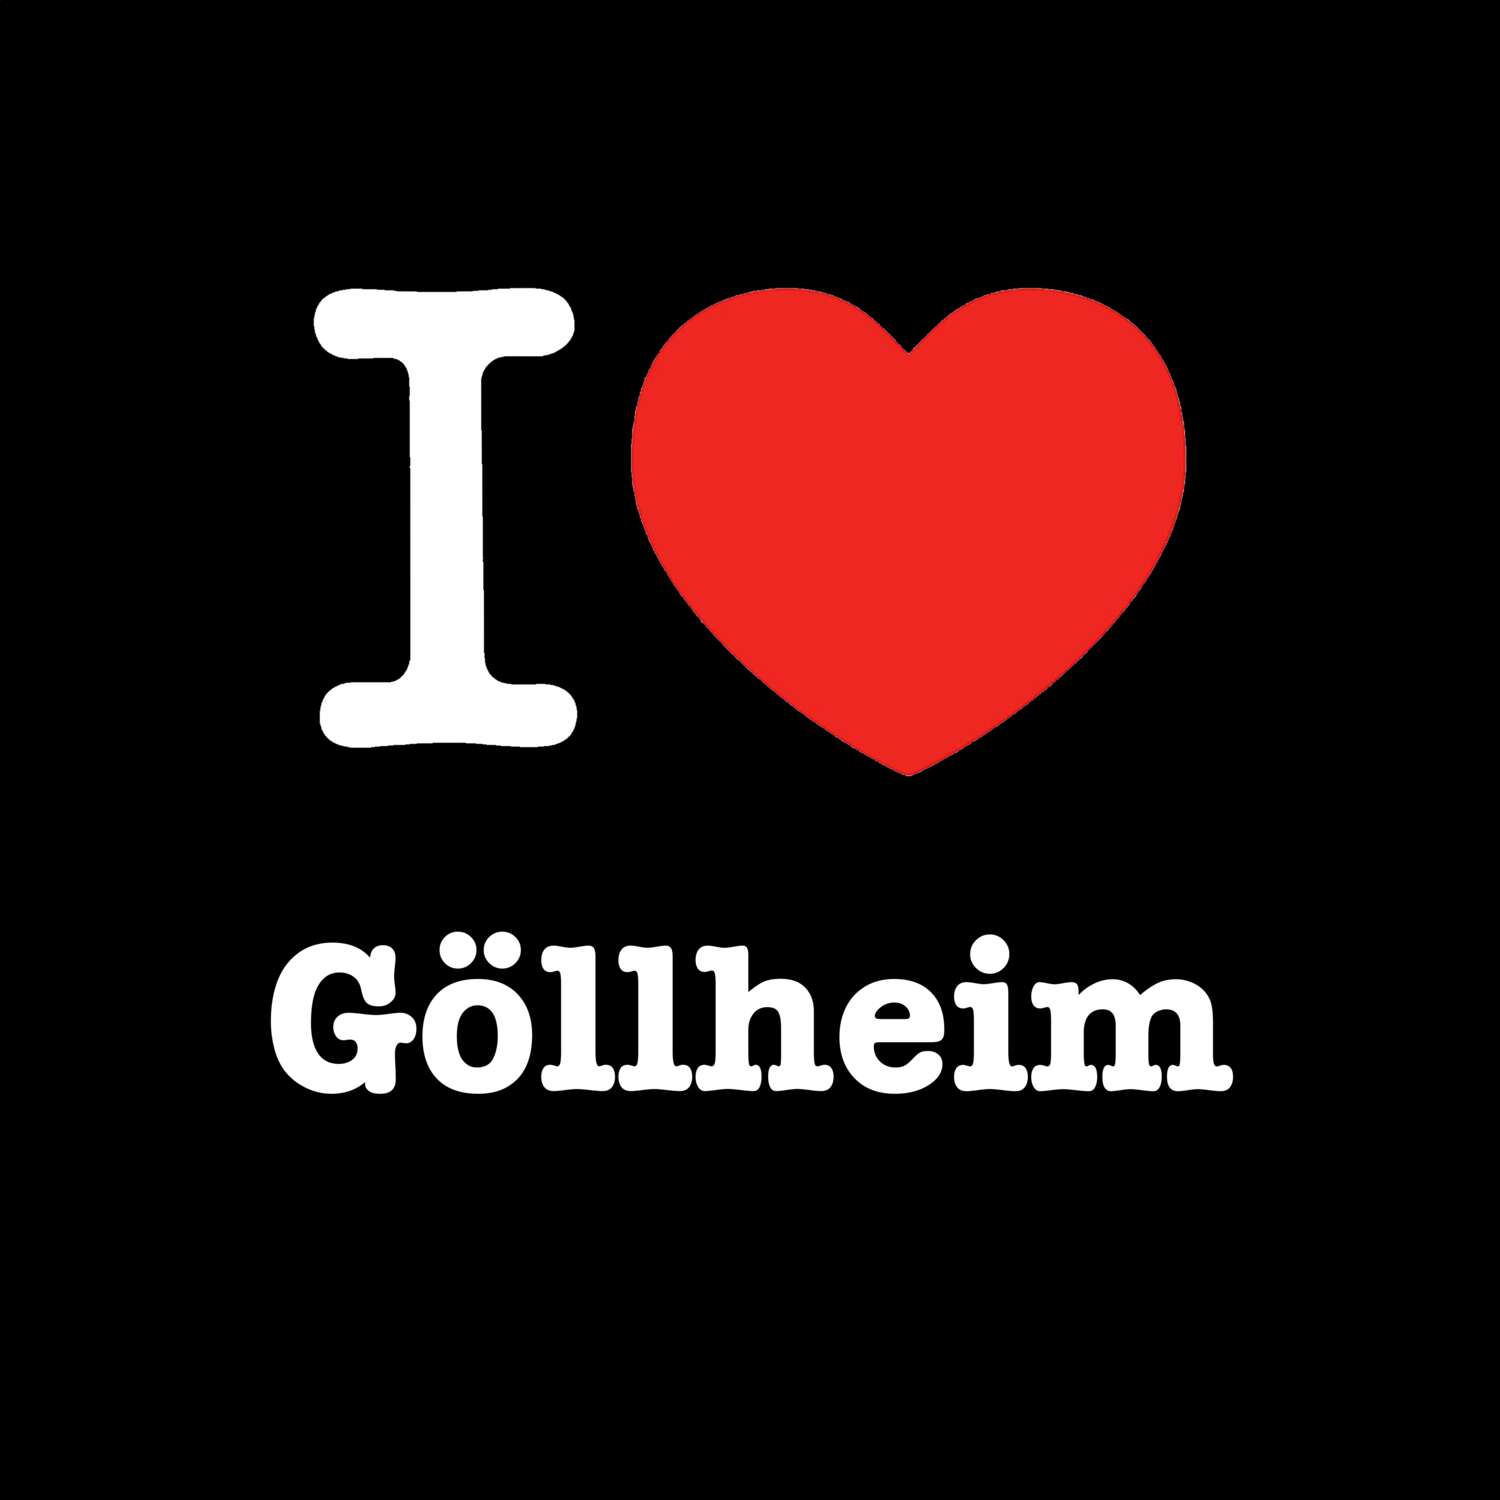 Göllheim T-Shirt »I love«